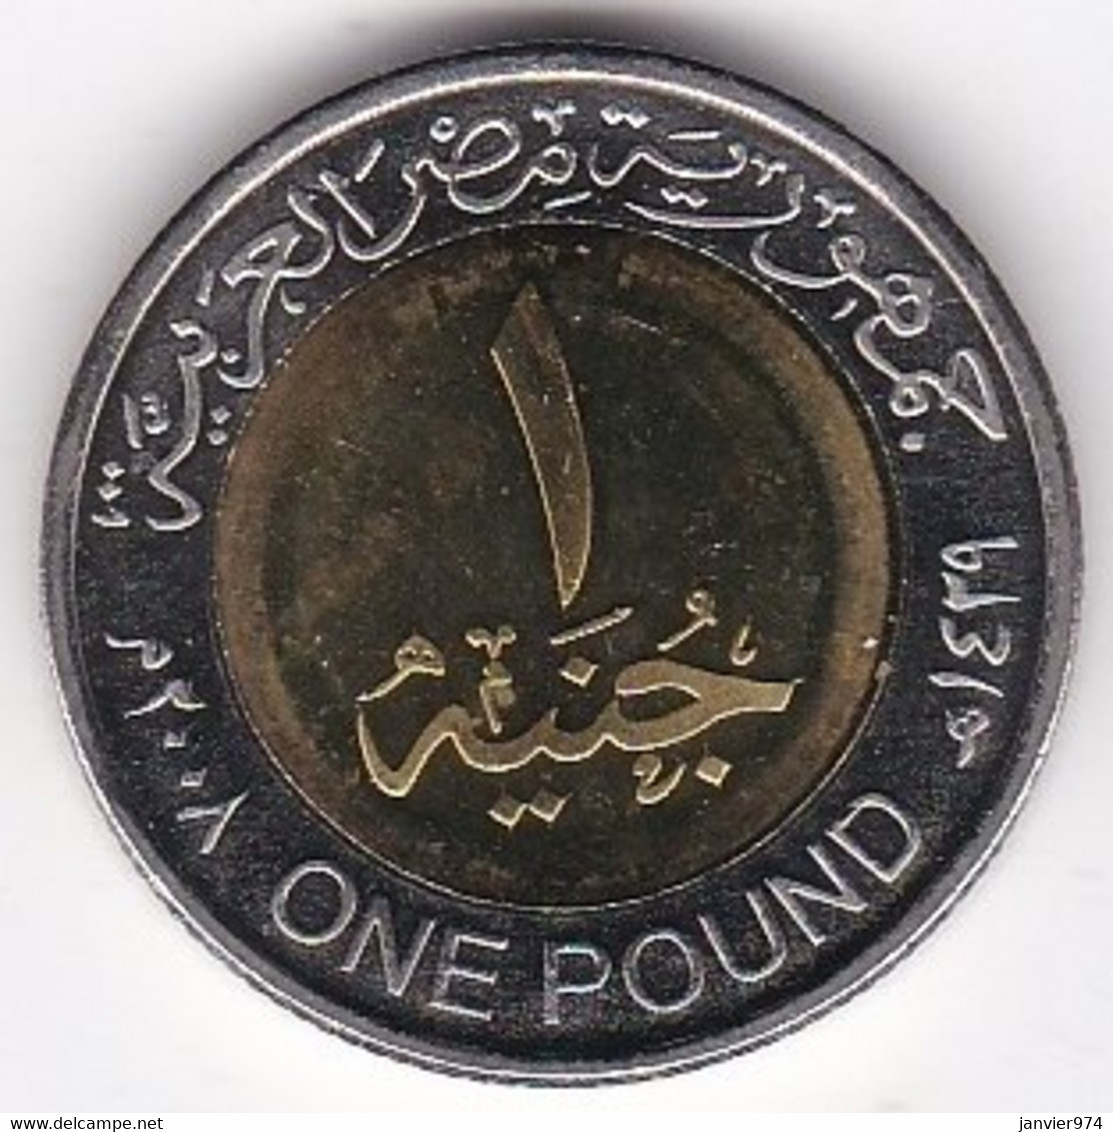 Egypte, 1 Pound AH 1429 – 2008, Masque Funéraire De Toutankhamon, Bimétallique, KM# 940a , Neuve UNC - Egypt